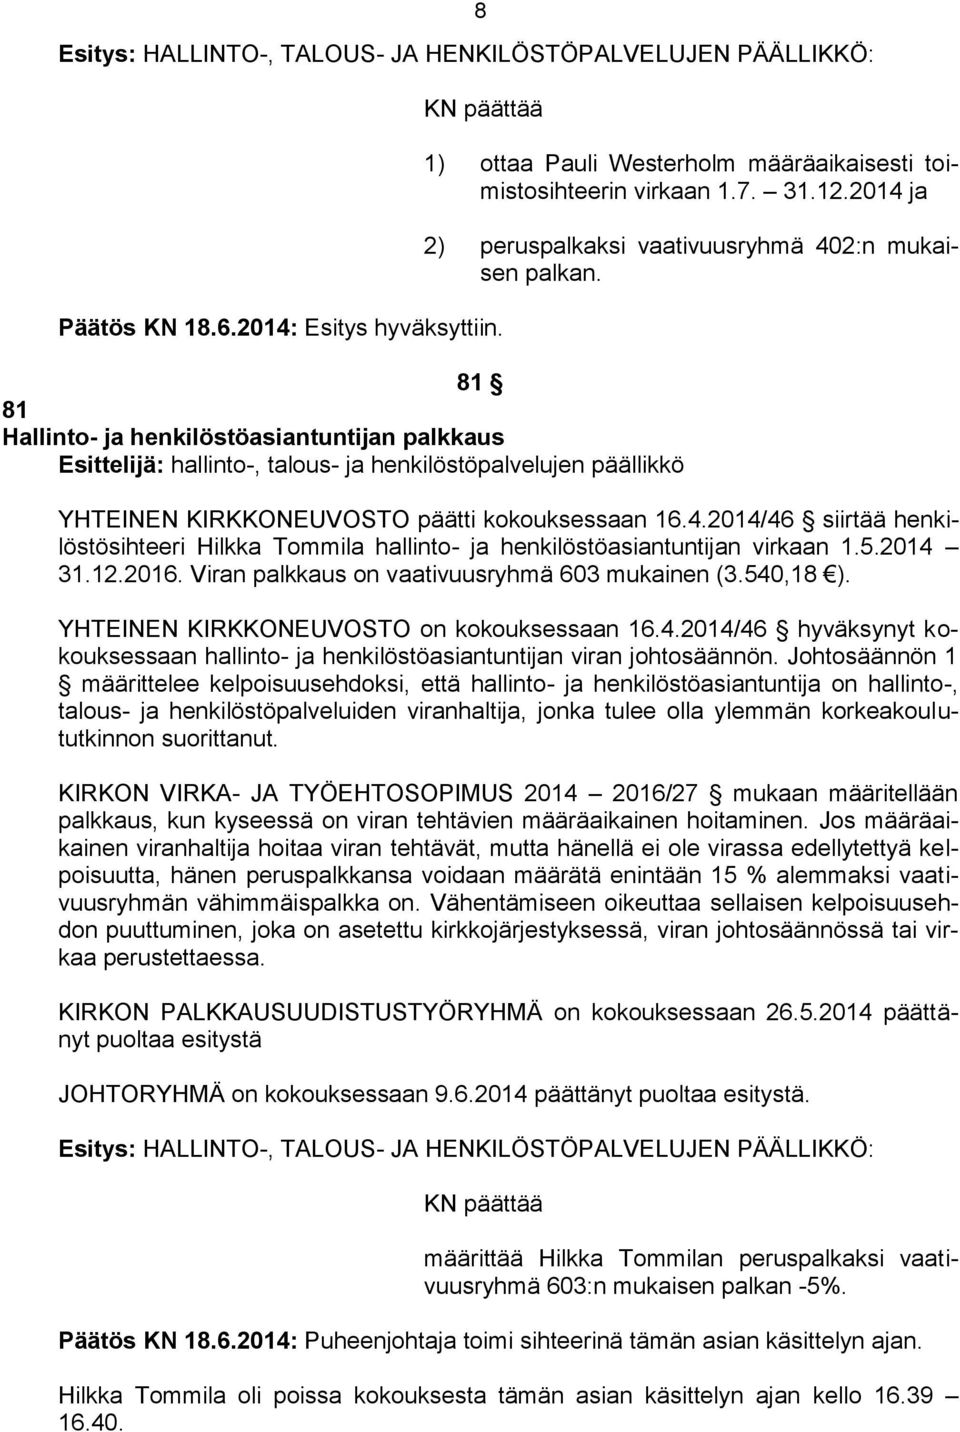 5.2014 31.12.2016. Viran palkkaus on vaativuusryhmä 603 mukainen (3.540,18 ). YHTEINEN KIRKKONEUVOSTO on kokouksessaan 16.4.2014/46 hyväksynyt kokouksessaan hallinto- ja henkilöstöasiantuntijan viran johtosäännön.